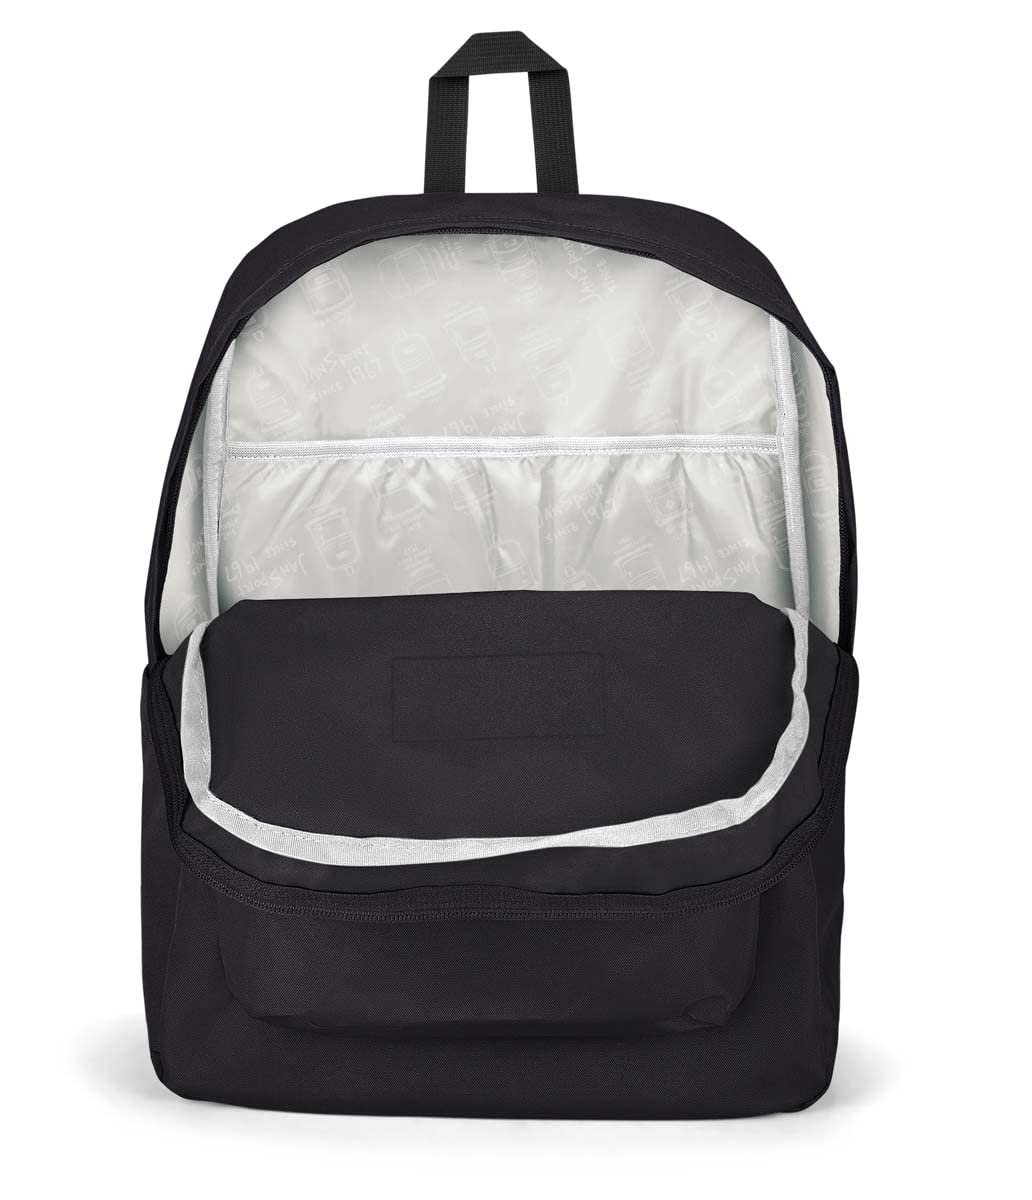 JanSport Superbreak Plus Backpack - Work, Travel, or Laptop Bookbag with Water Bottle Pocket, Black